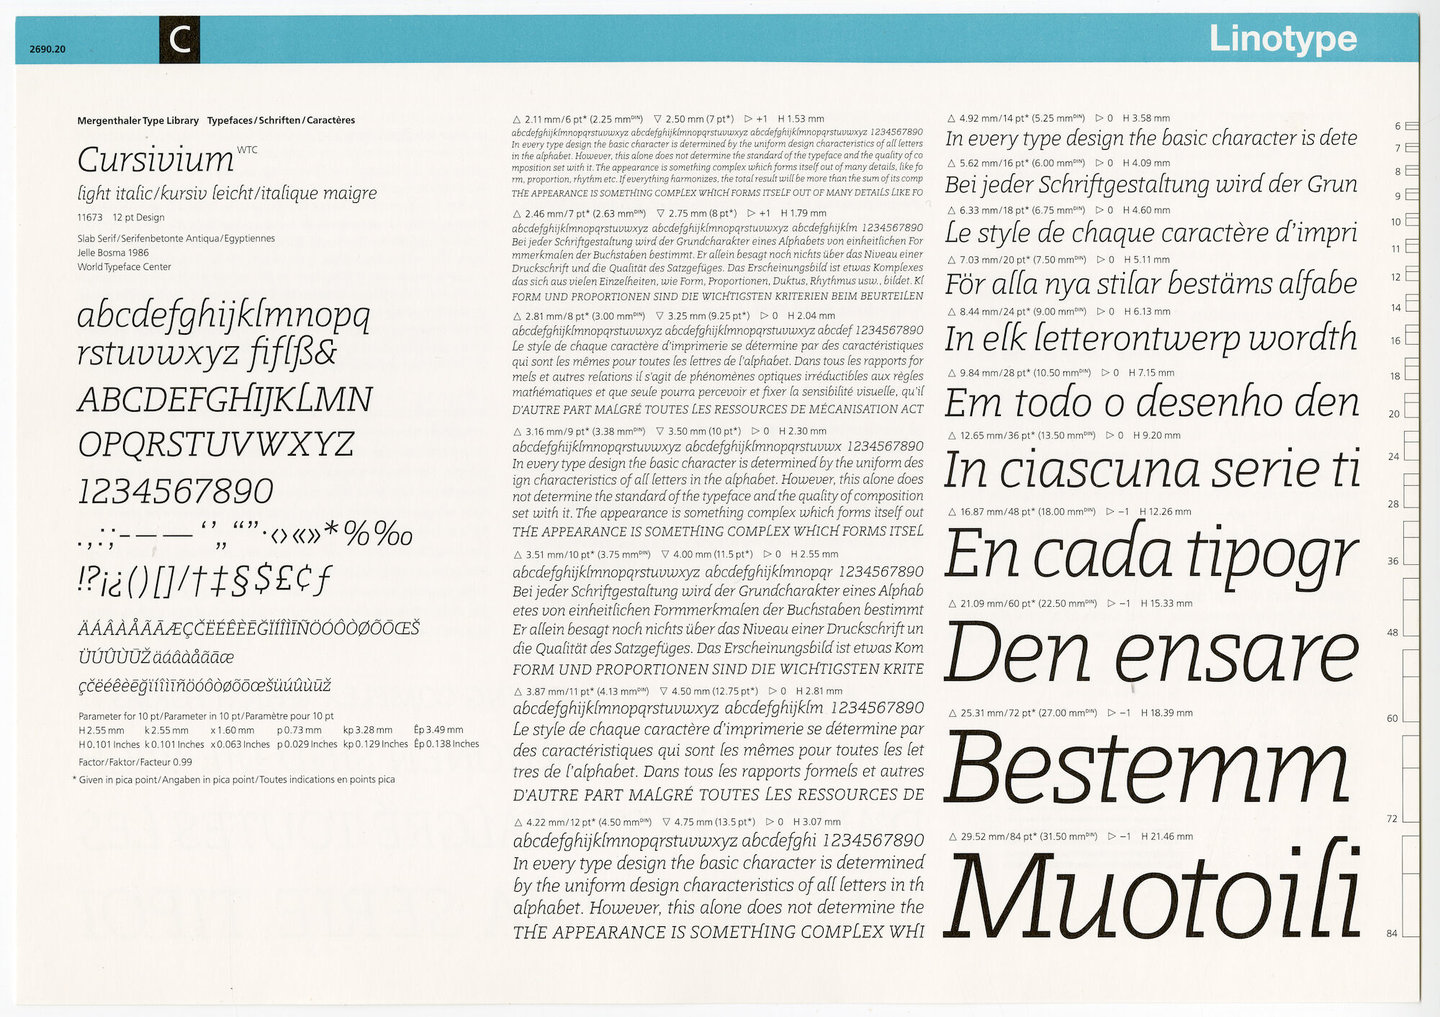 Letterproef met het lettertype Cursivium voor Linotype